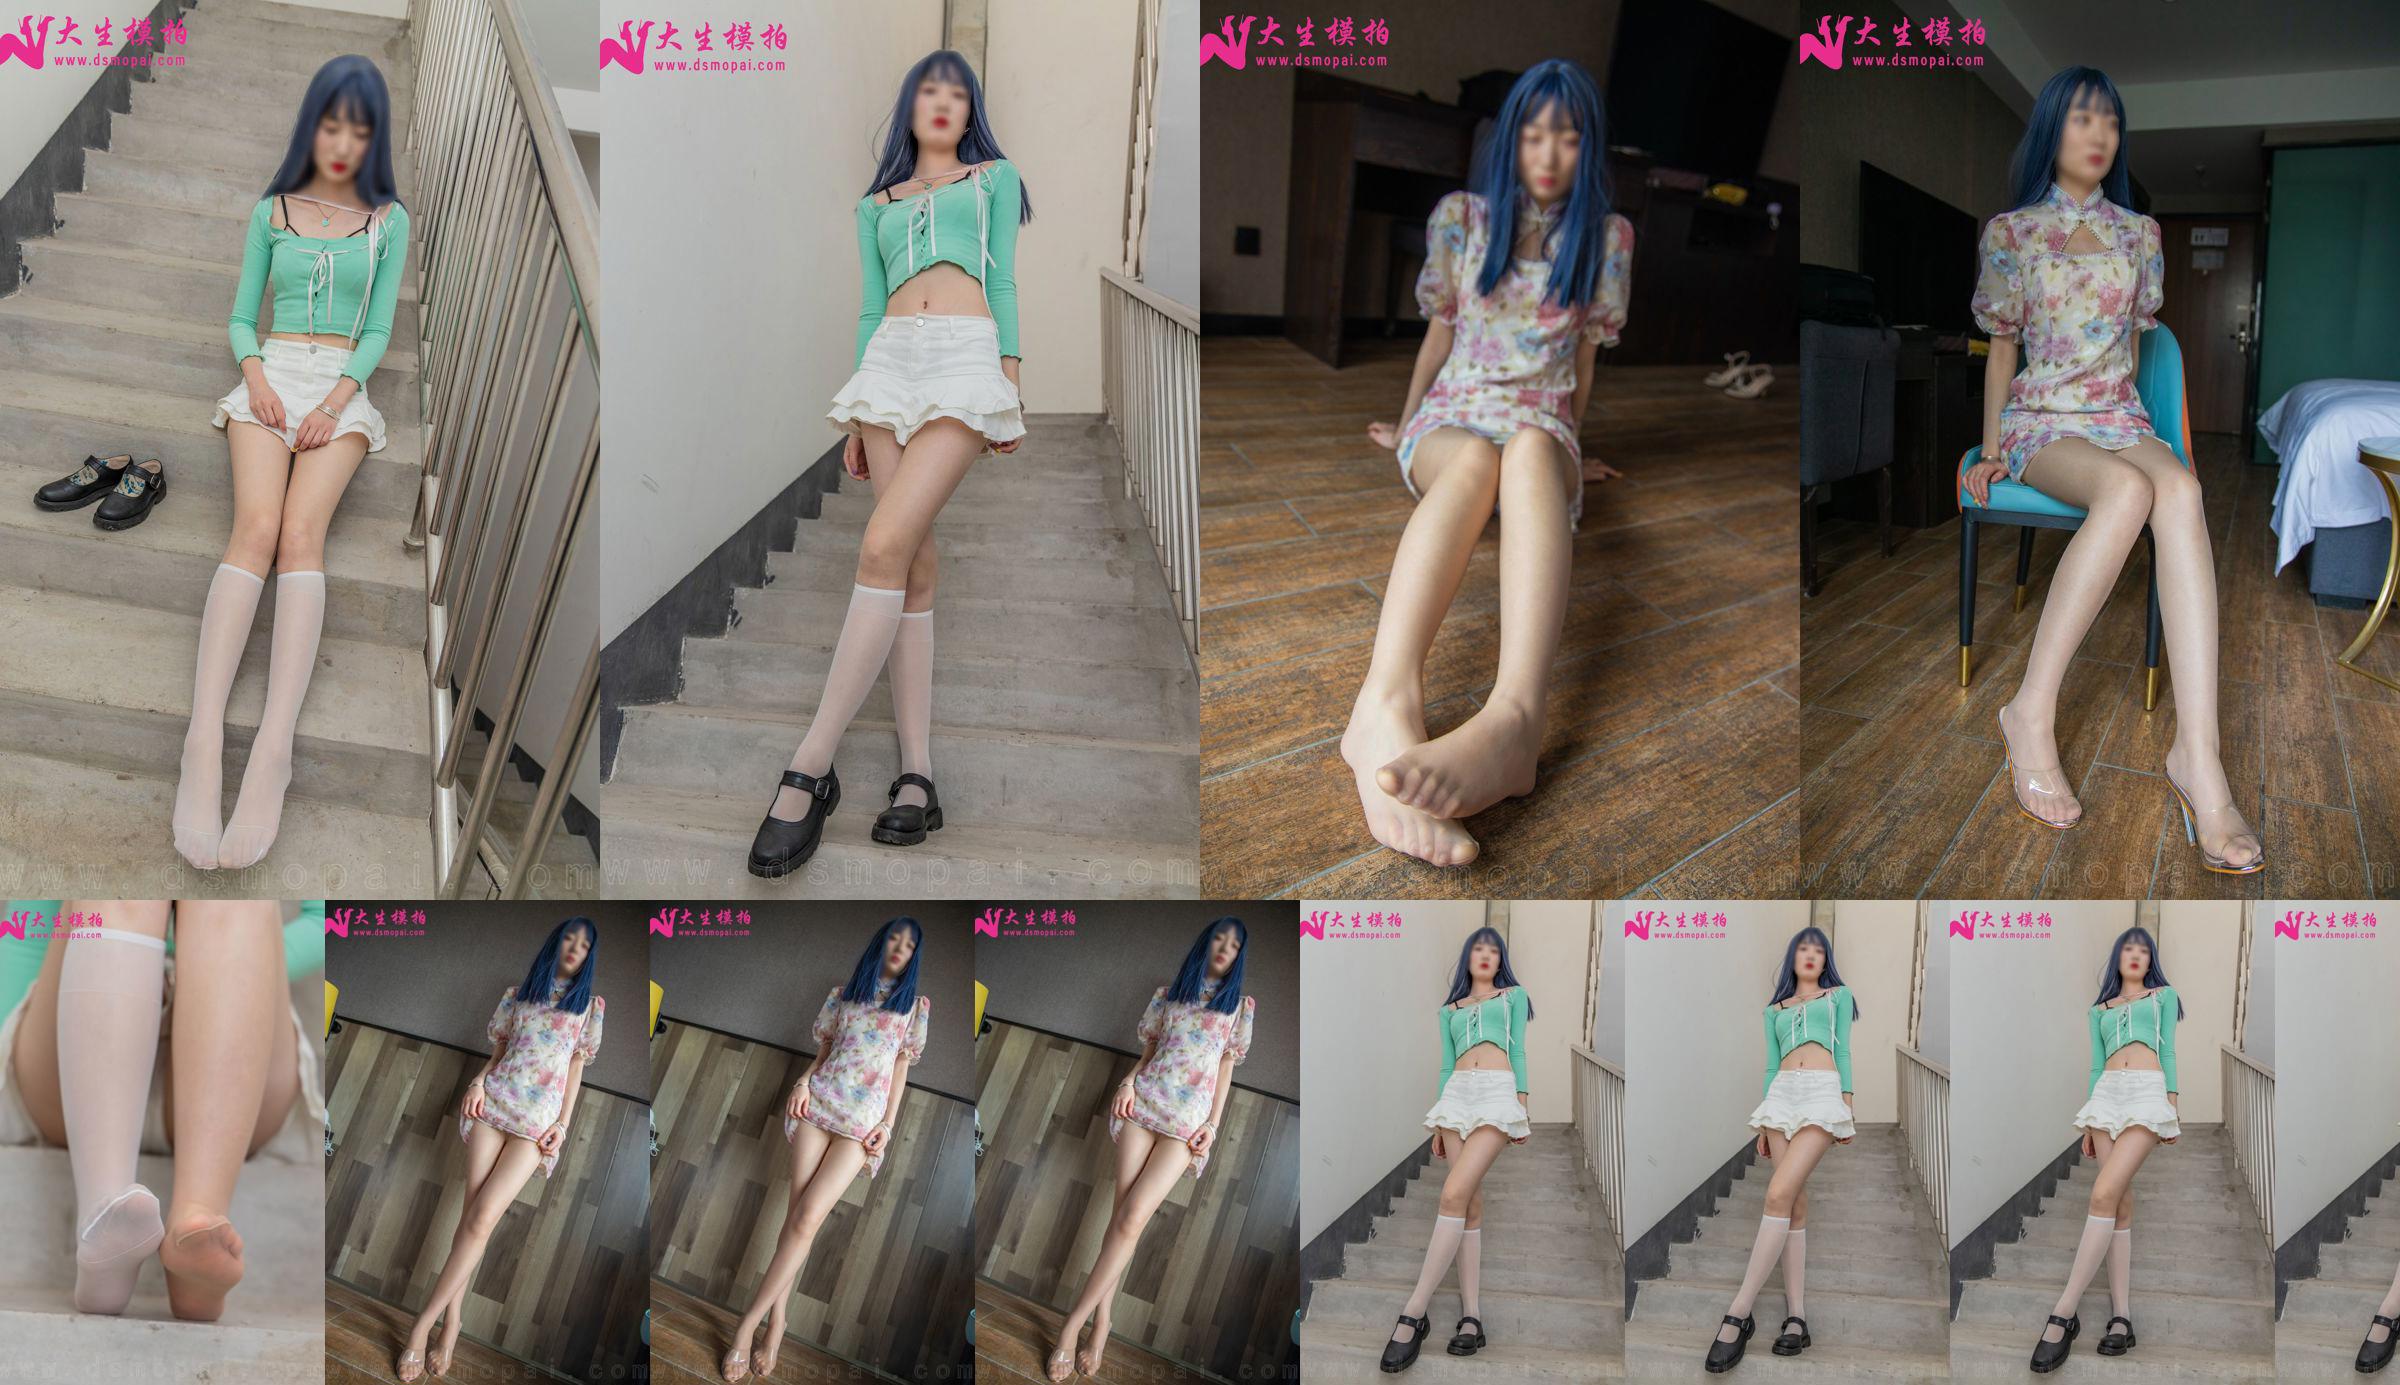 [Съемка модели Dasheng] NO.231 Lili Perfect Long Legs Photo Set No.2daff3 Страница 1